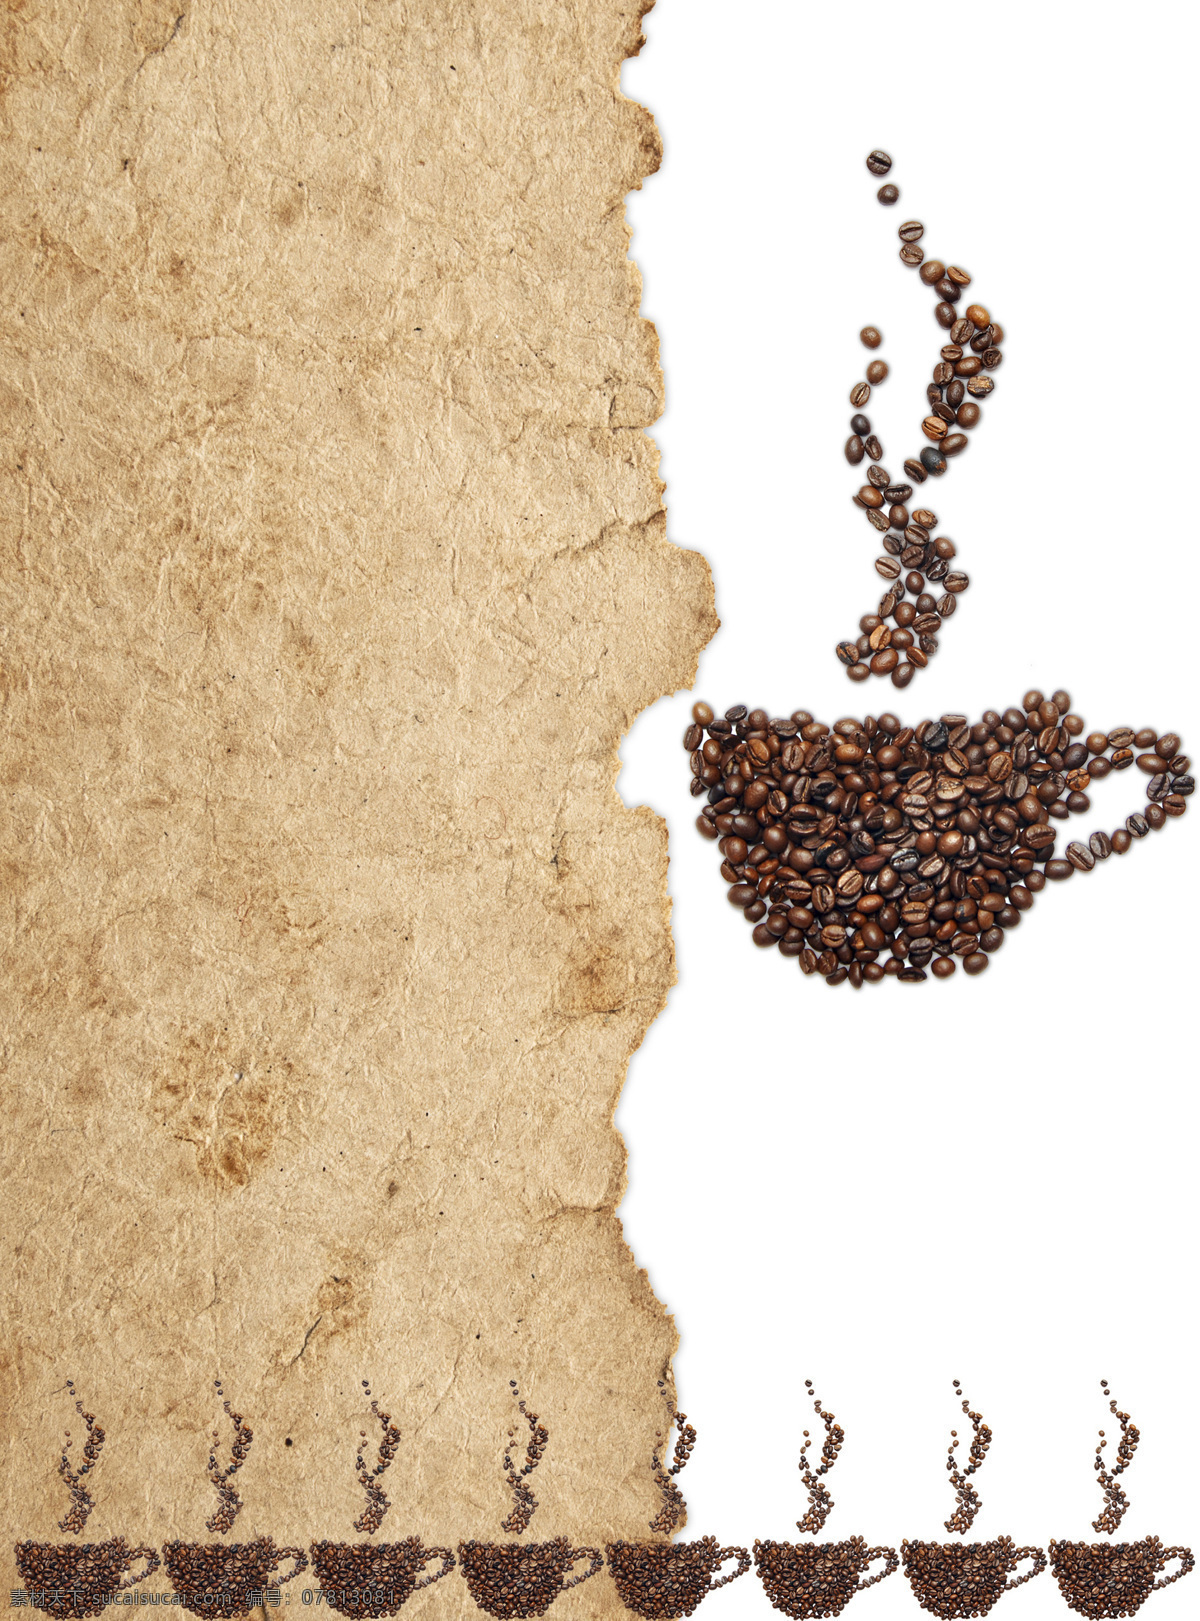 醇香 咖啡豆 原料 食材 醇香咖啡豆 复古背景 咖啡杯 香气 咖啡图片 餐饮美食